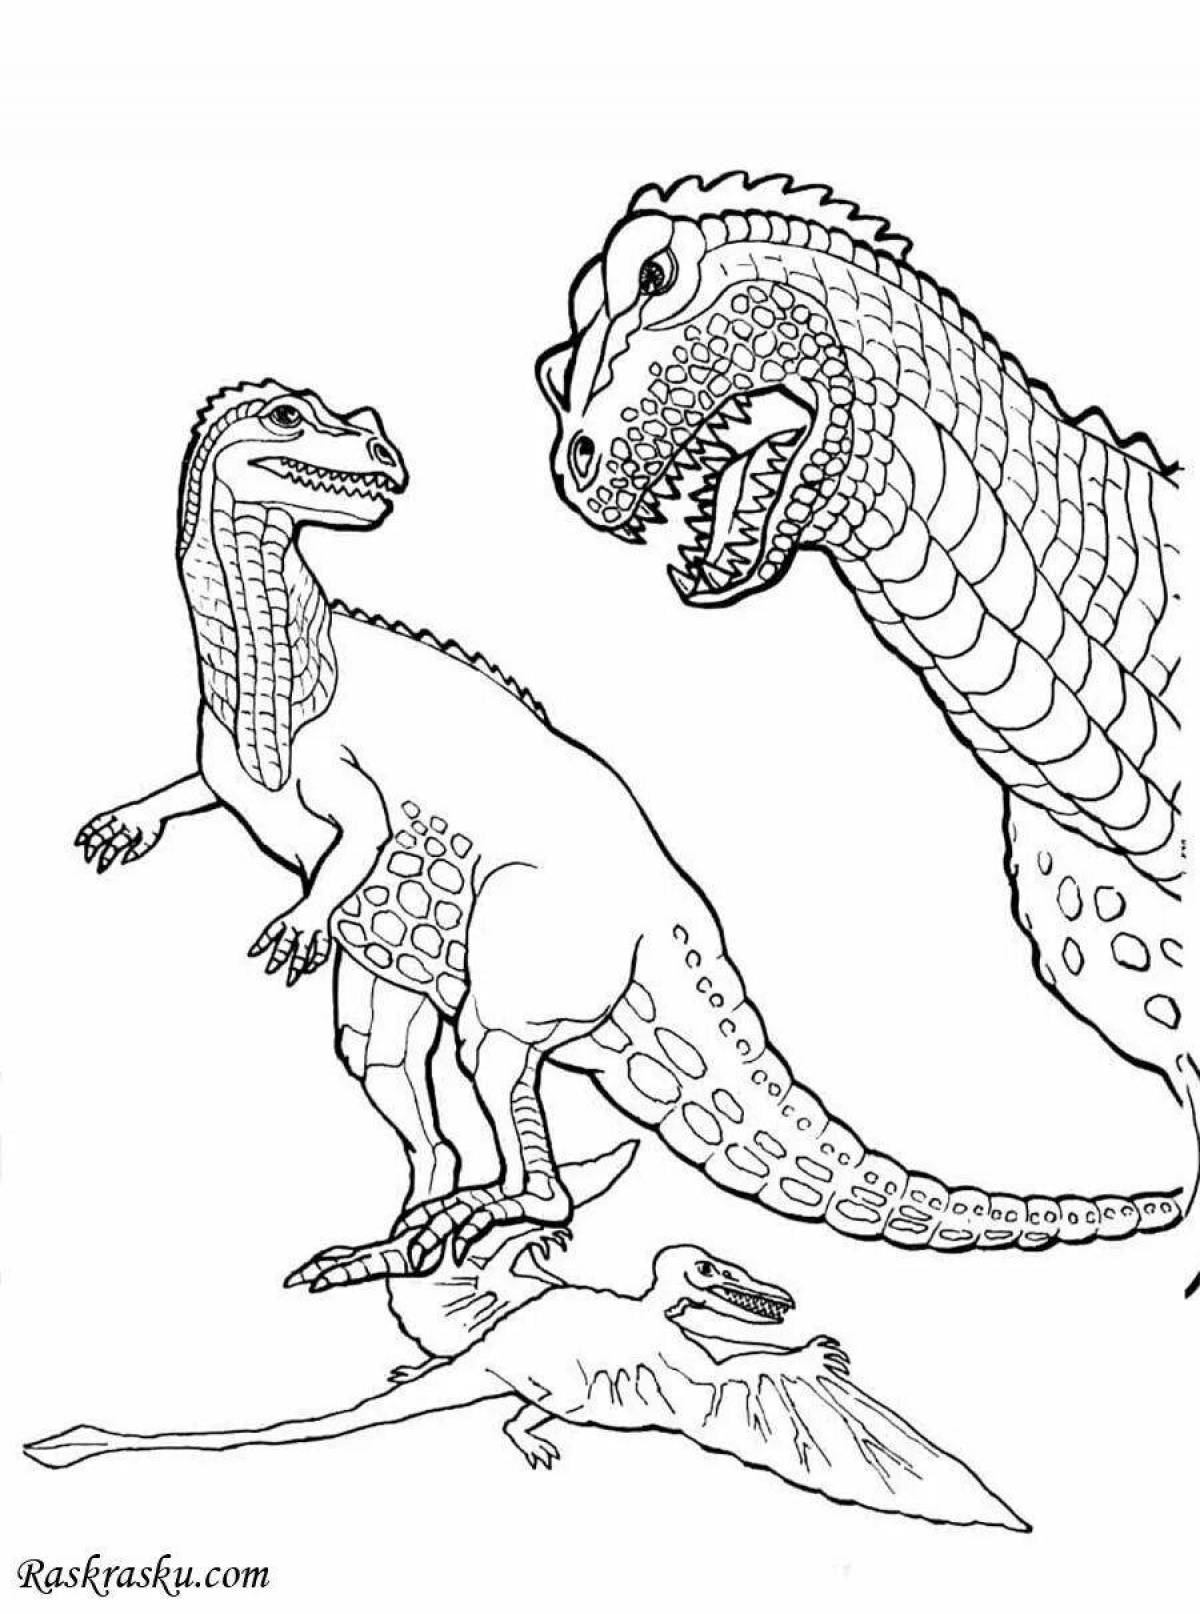 Раскраска великолепный цератозавр